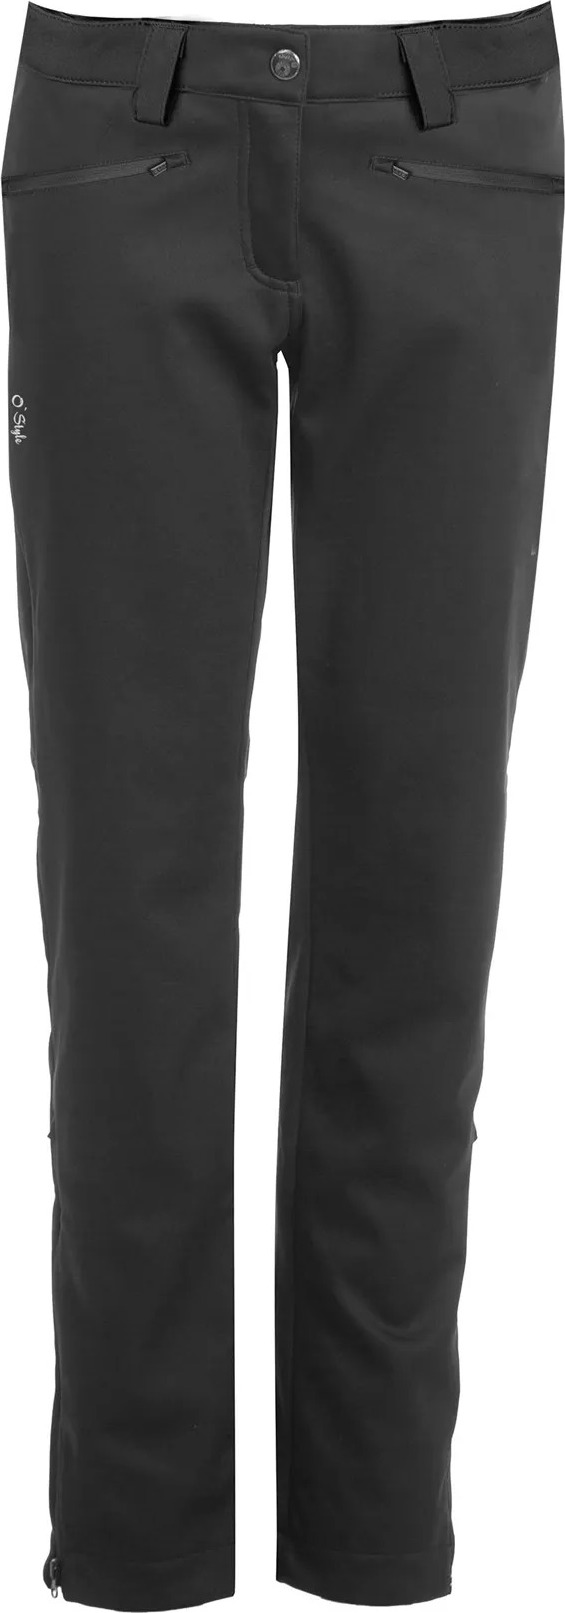 Dámské softshellové kalhoty O'STYLE Riva II černé Velikost: 36